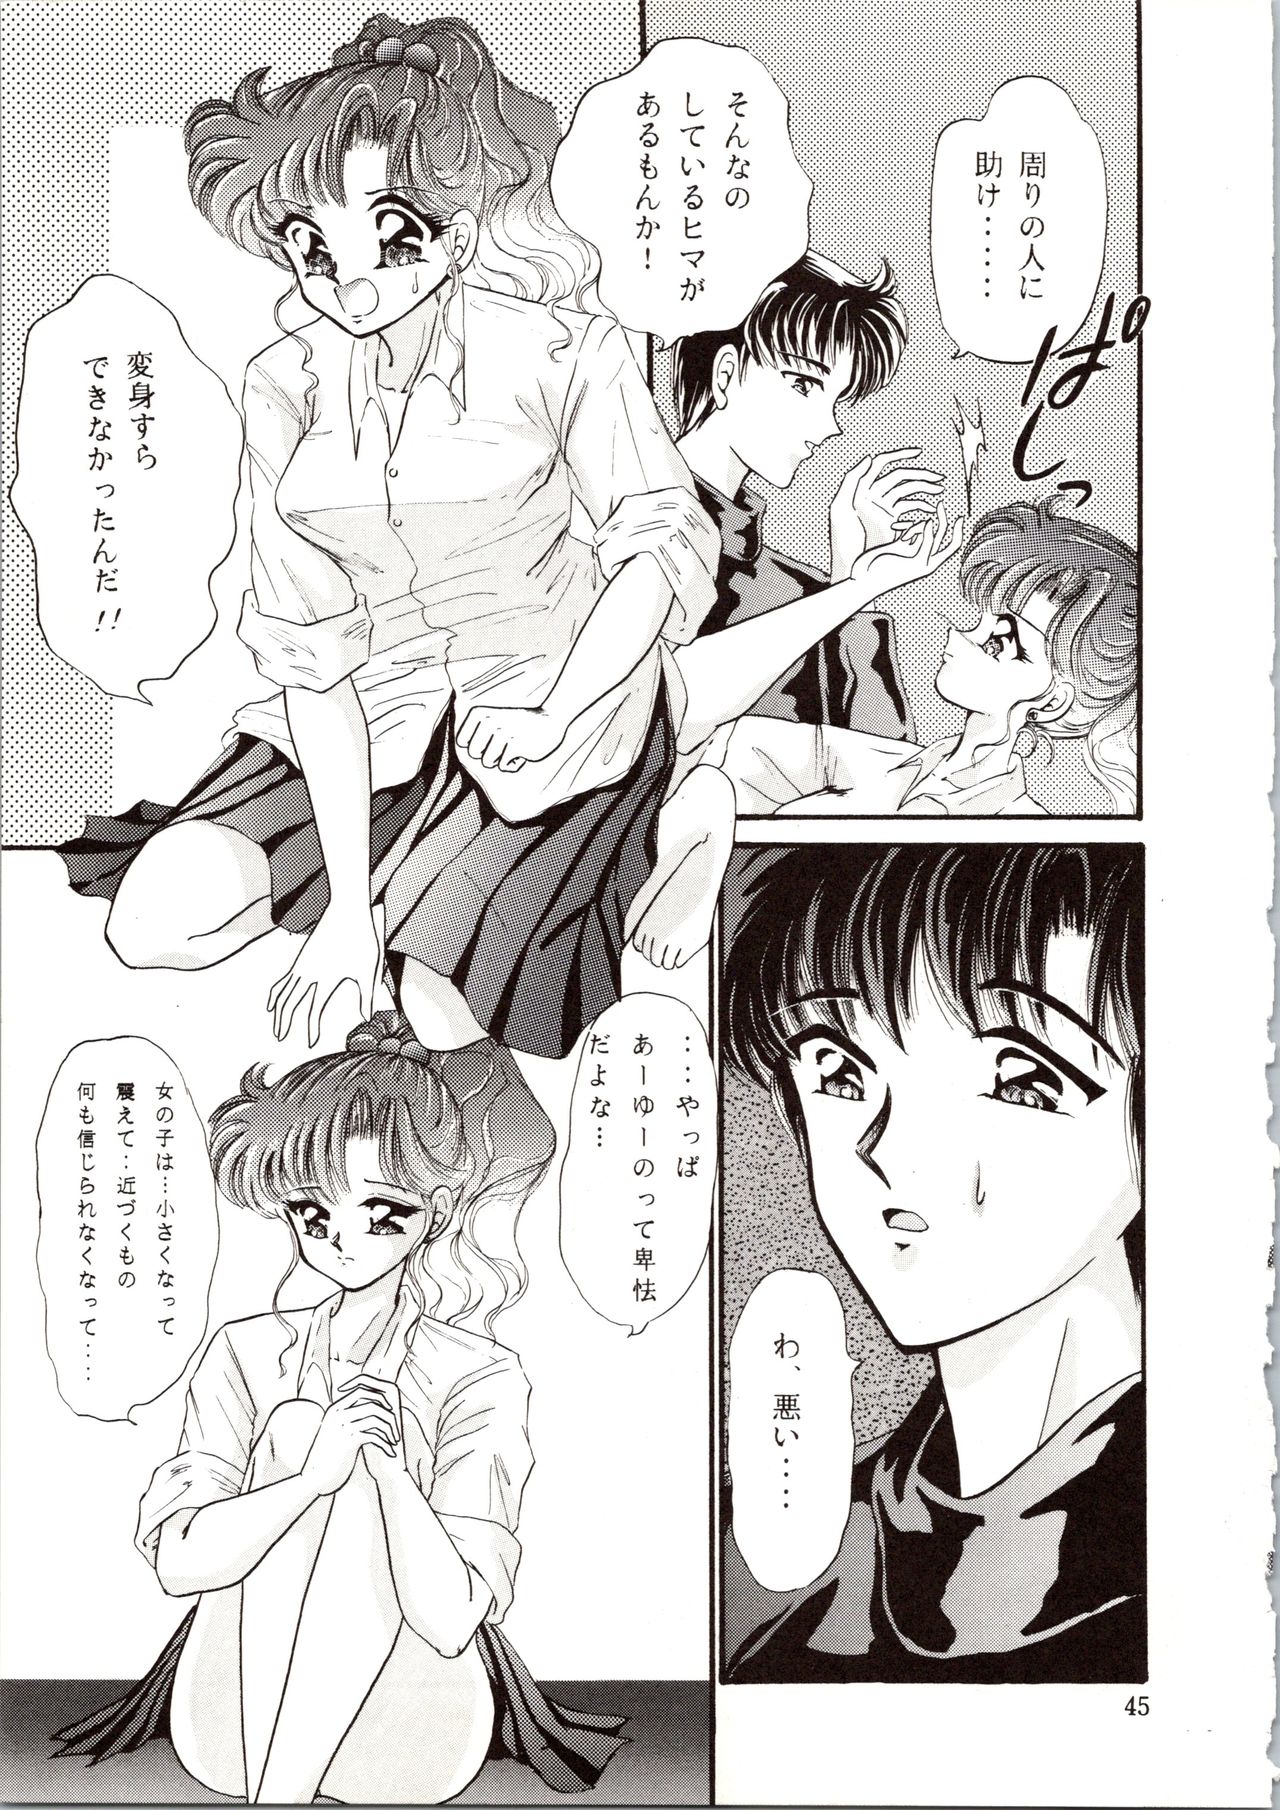 [P.P.P.P.C, TRAP (Matsuzaka Reia, Urano Mami)] Kangethu Hien Vol. 6 (Bishoujo Senshi Sailor Moon) page 45 full